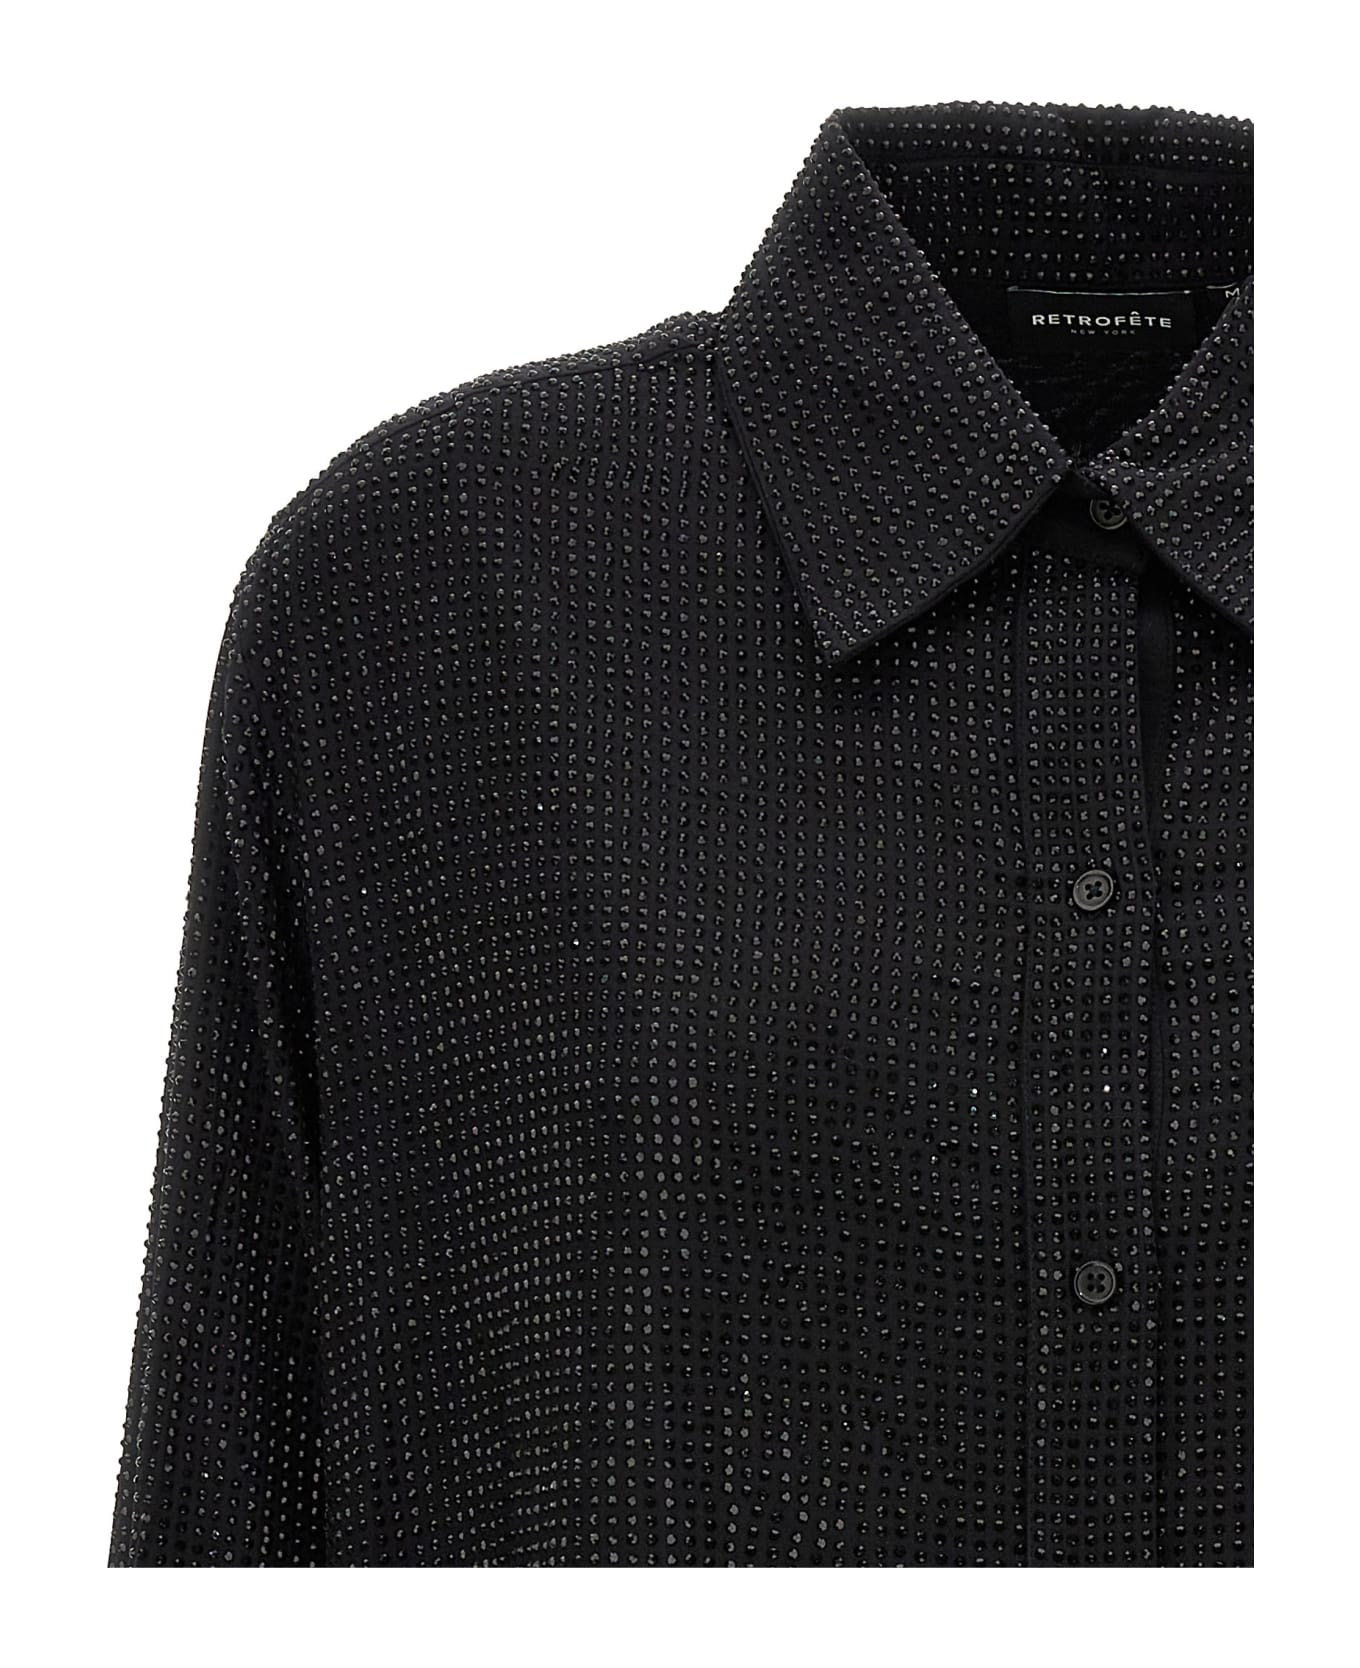 retrofete 'maddox' Shirt Dress - Black   シャツ